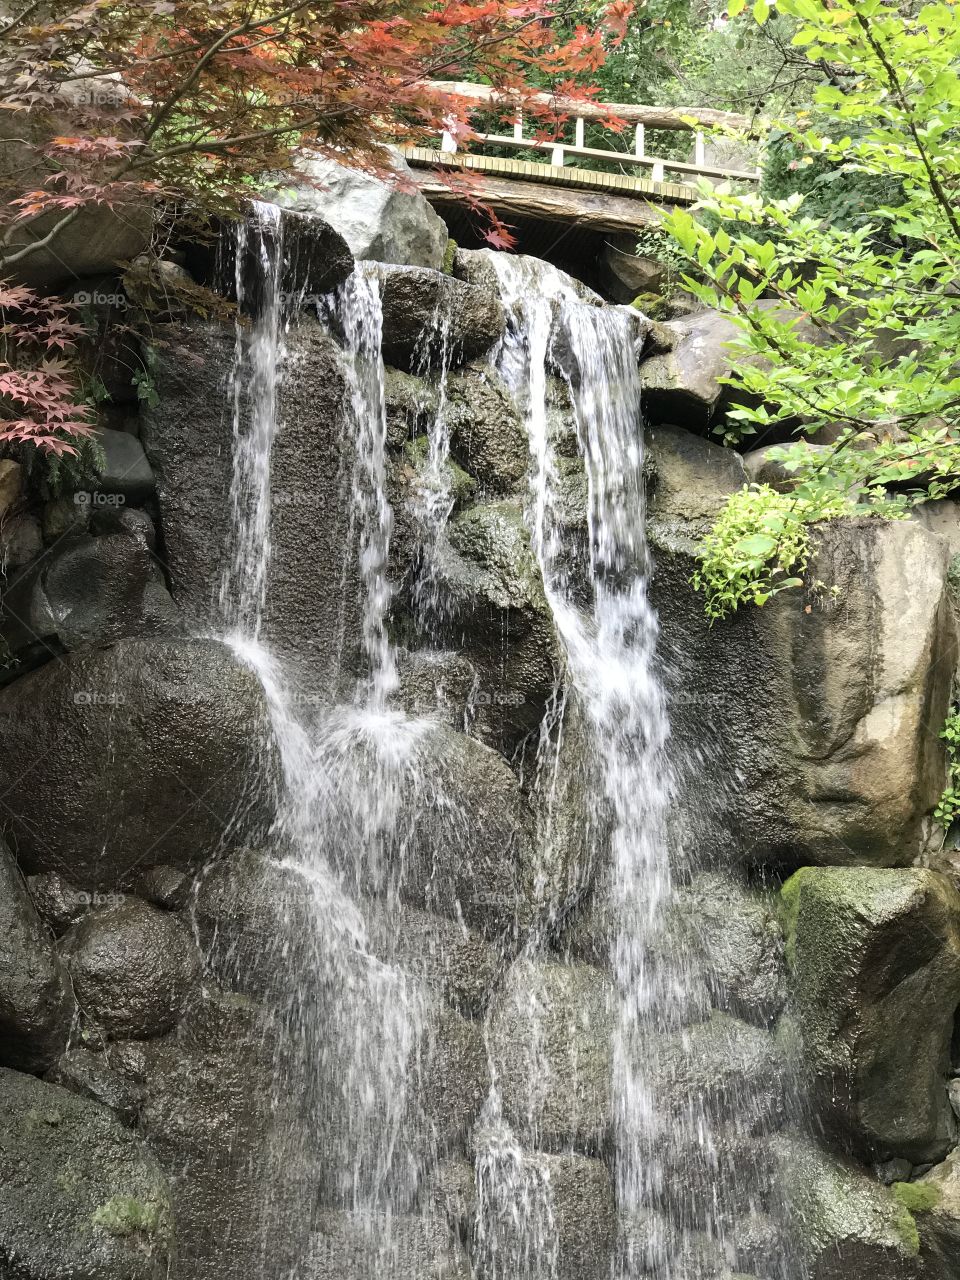 Waterfall garden
